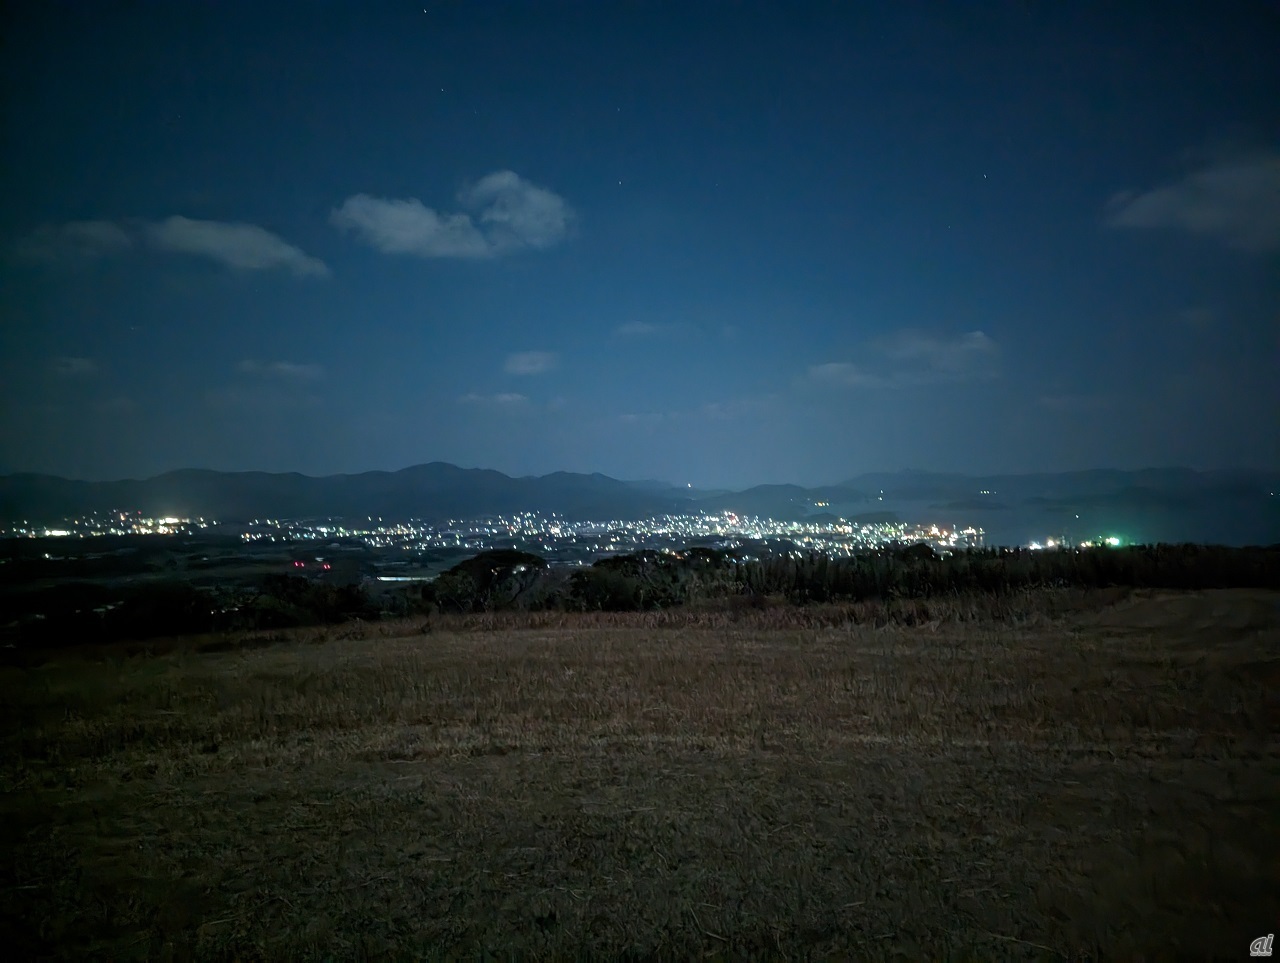 さまざまな場所で福江島のシンボルと紹介されている鬼岳は、福江港から車で約15分。アクセスしやすい場所にある上に島を見渡すことも星空を楽しむこともできる人気スポットだ